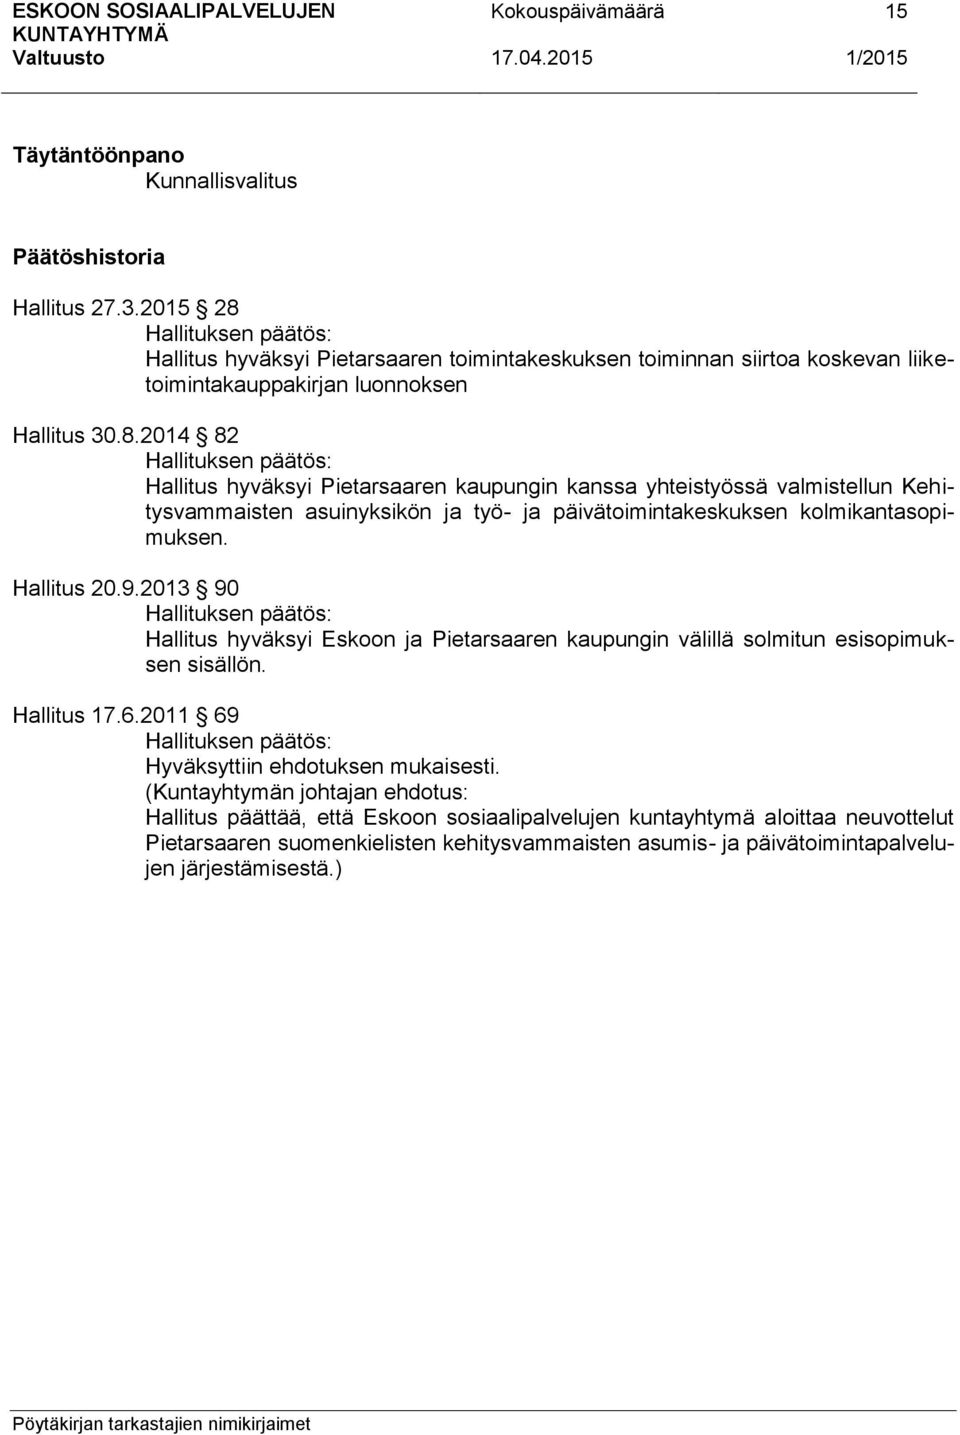 Hallitus 20.9.2013 90 Hallituksen päätös: Hallitus hyväksyi Eskoon ja Pietarsaaren kaupungin välillä solmitun esisopimuksen sisällön. Hallitus 17.6.